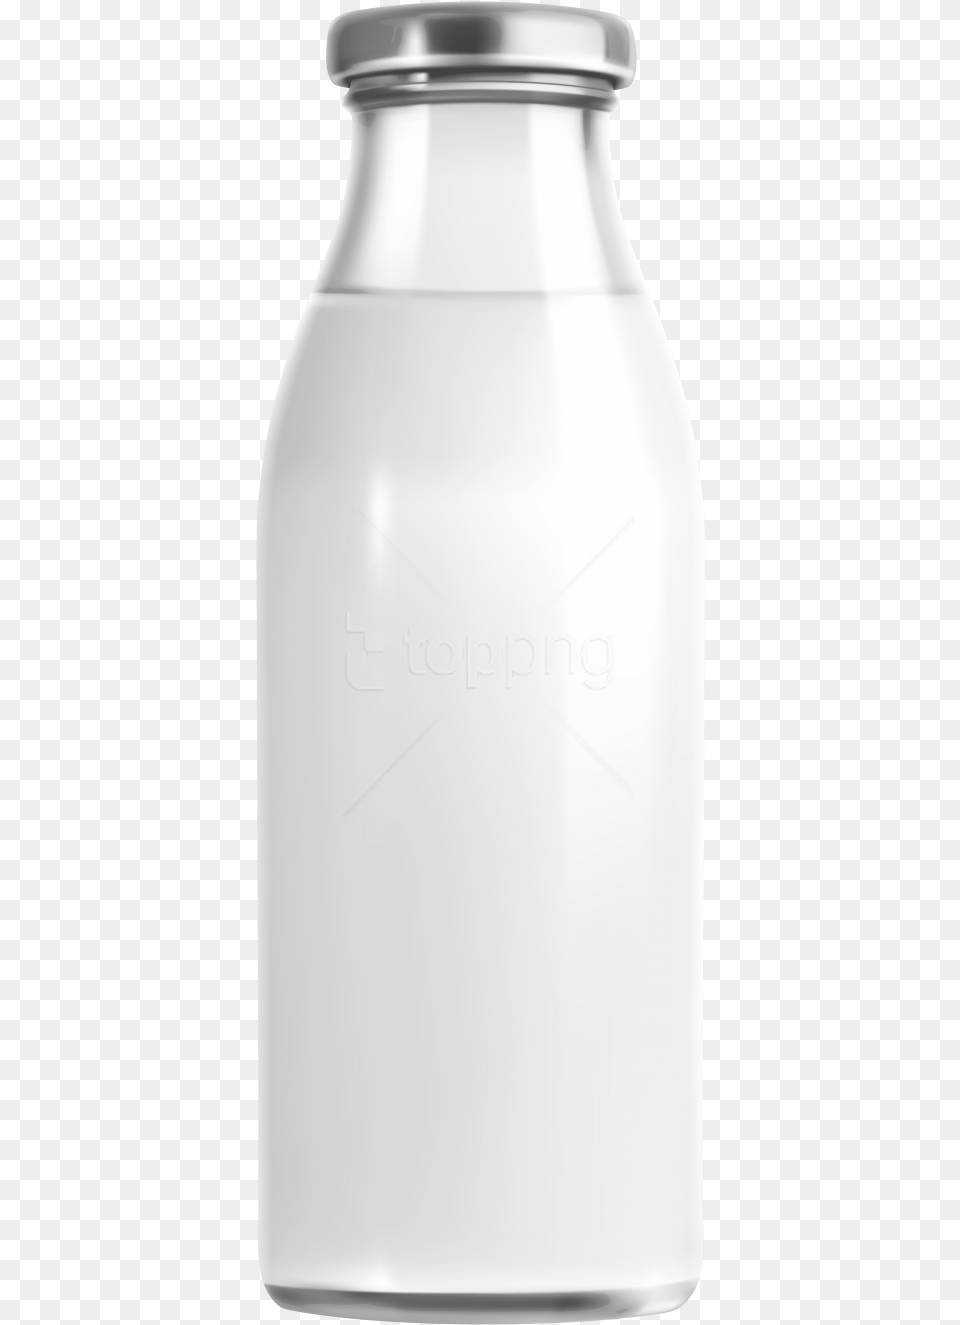 Milk Glass Bottle, Beverage, Jar Free Transparent Png